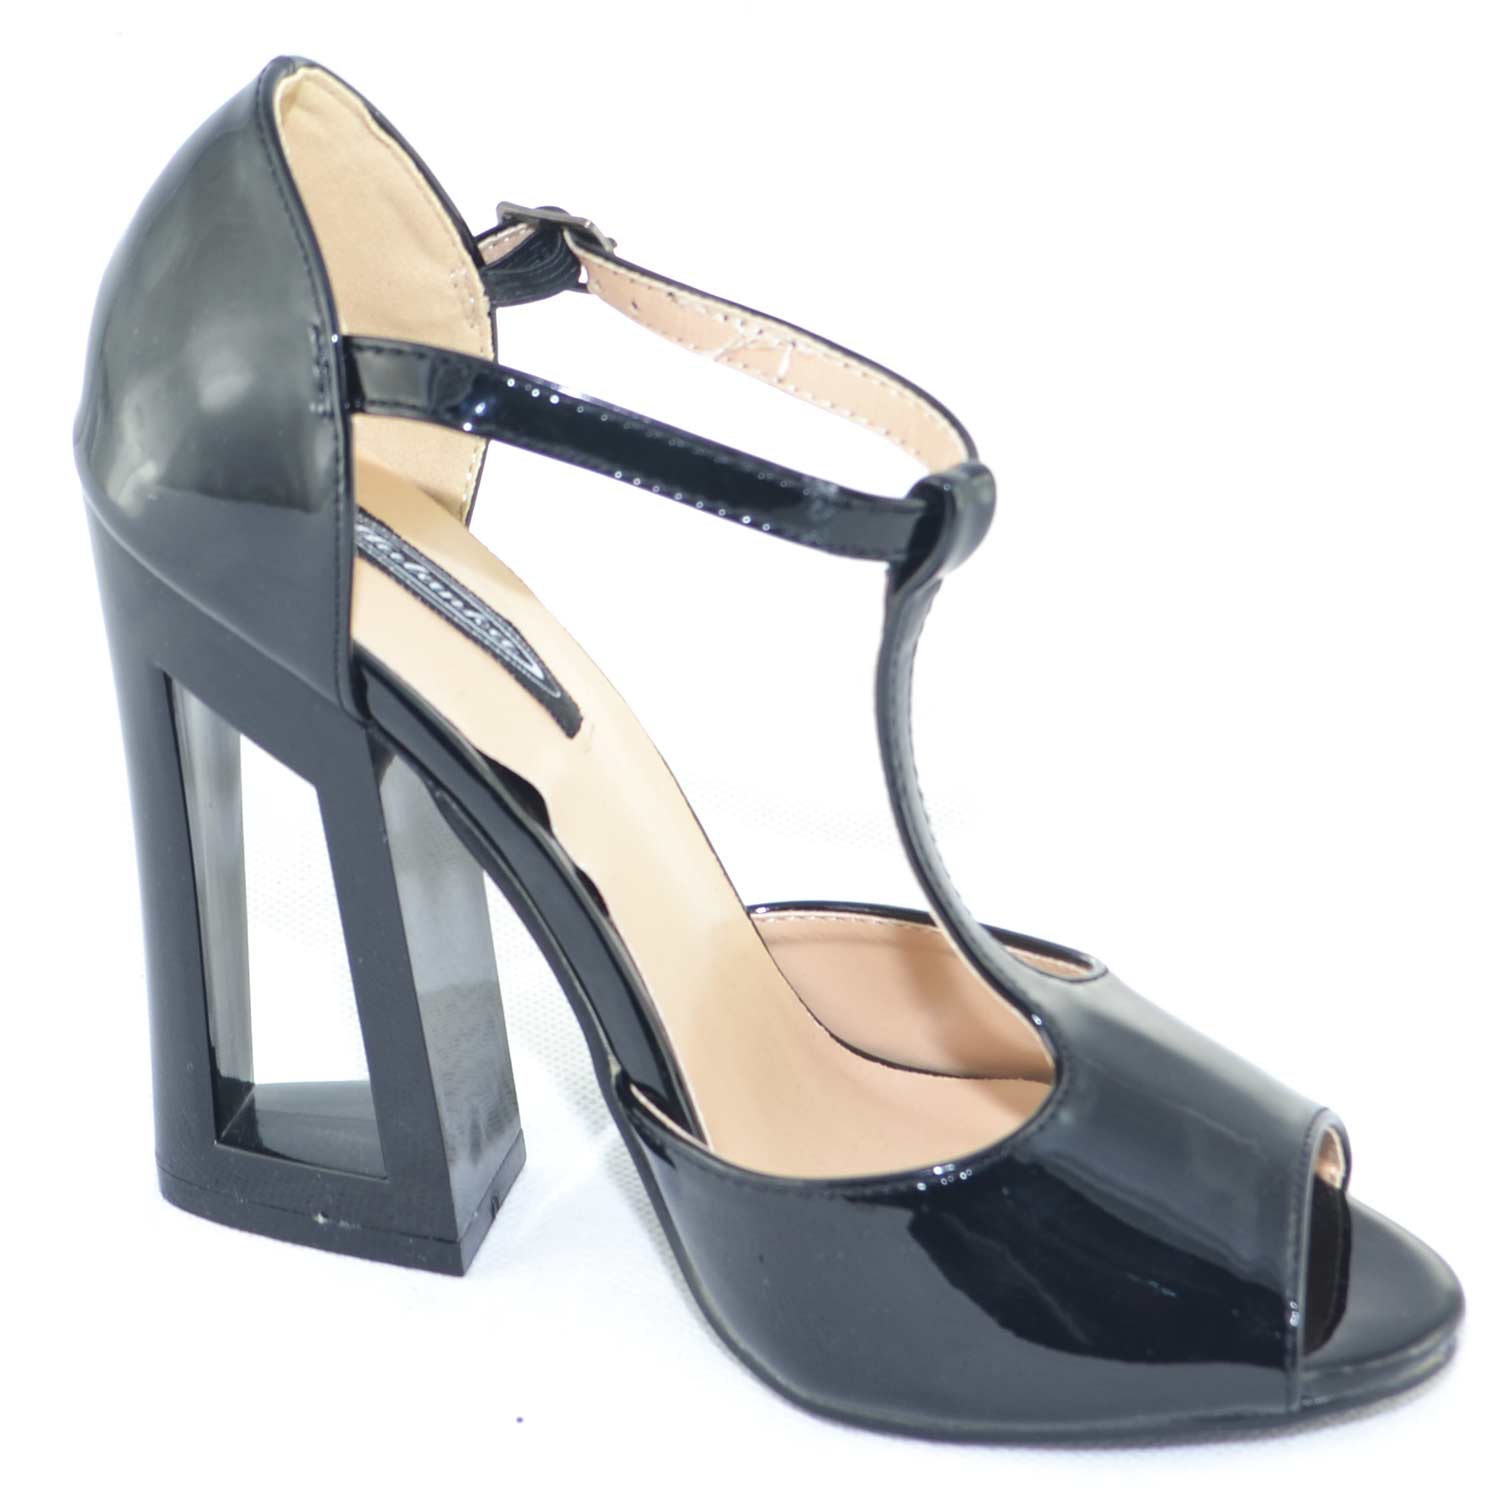 sandalo tacco aperto in vernice nero lucida con tacco largo e cinturino  glamour | eBay